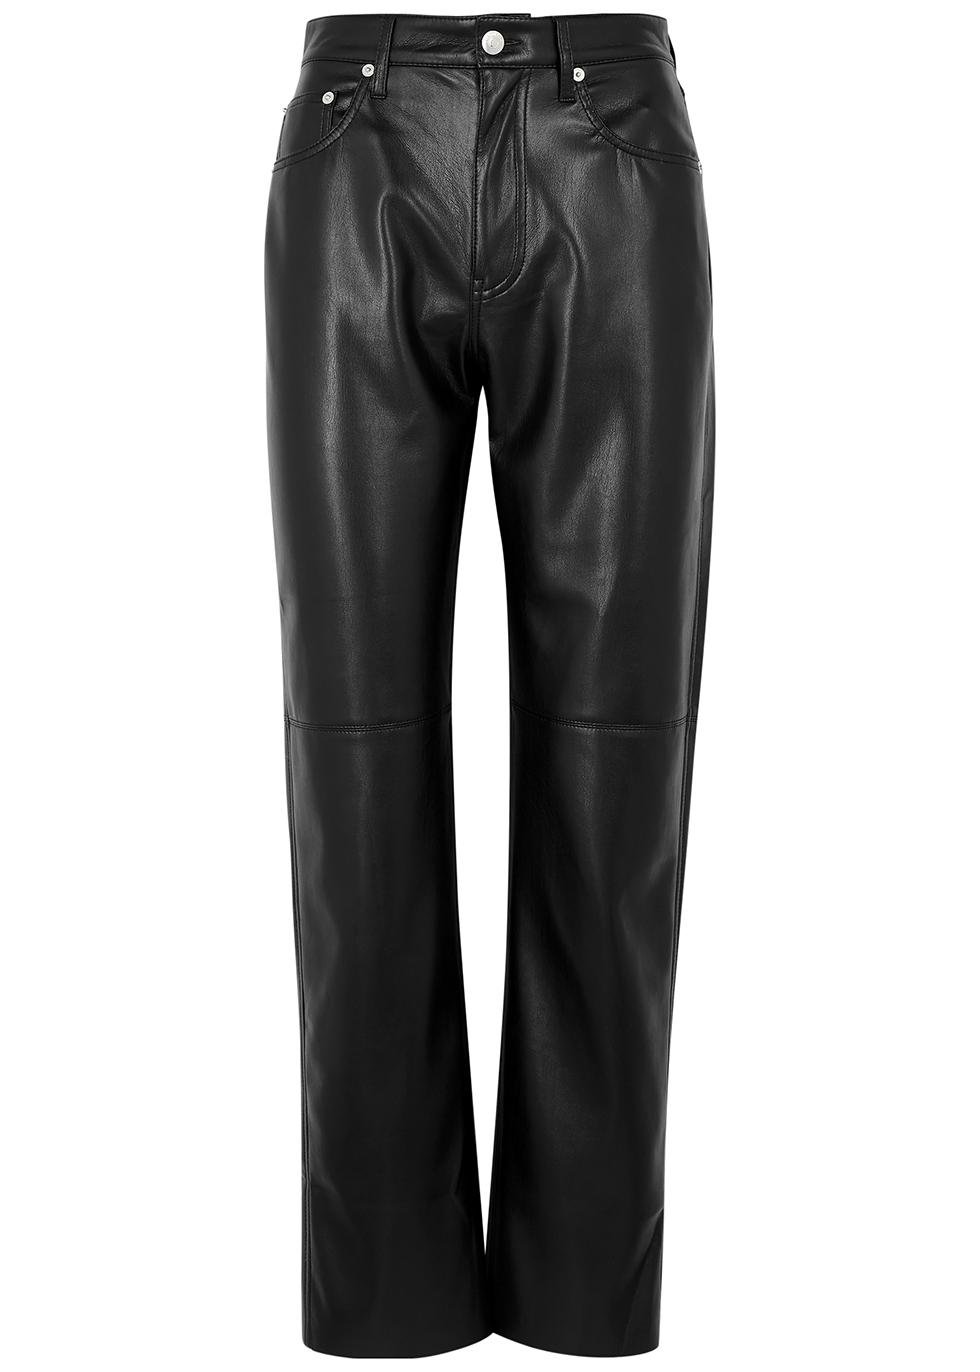 Vinni black faux leather trousers by NANUSHKA | jellibeans